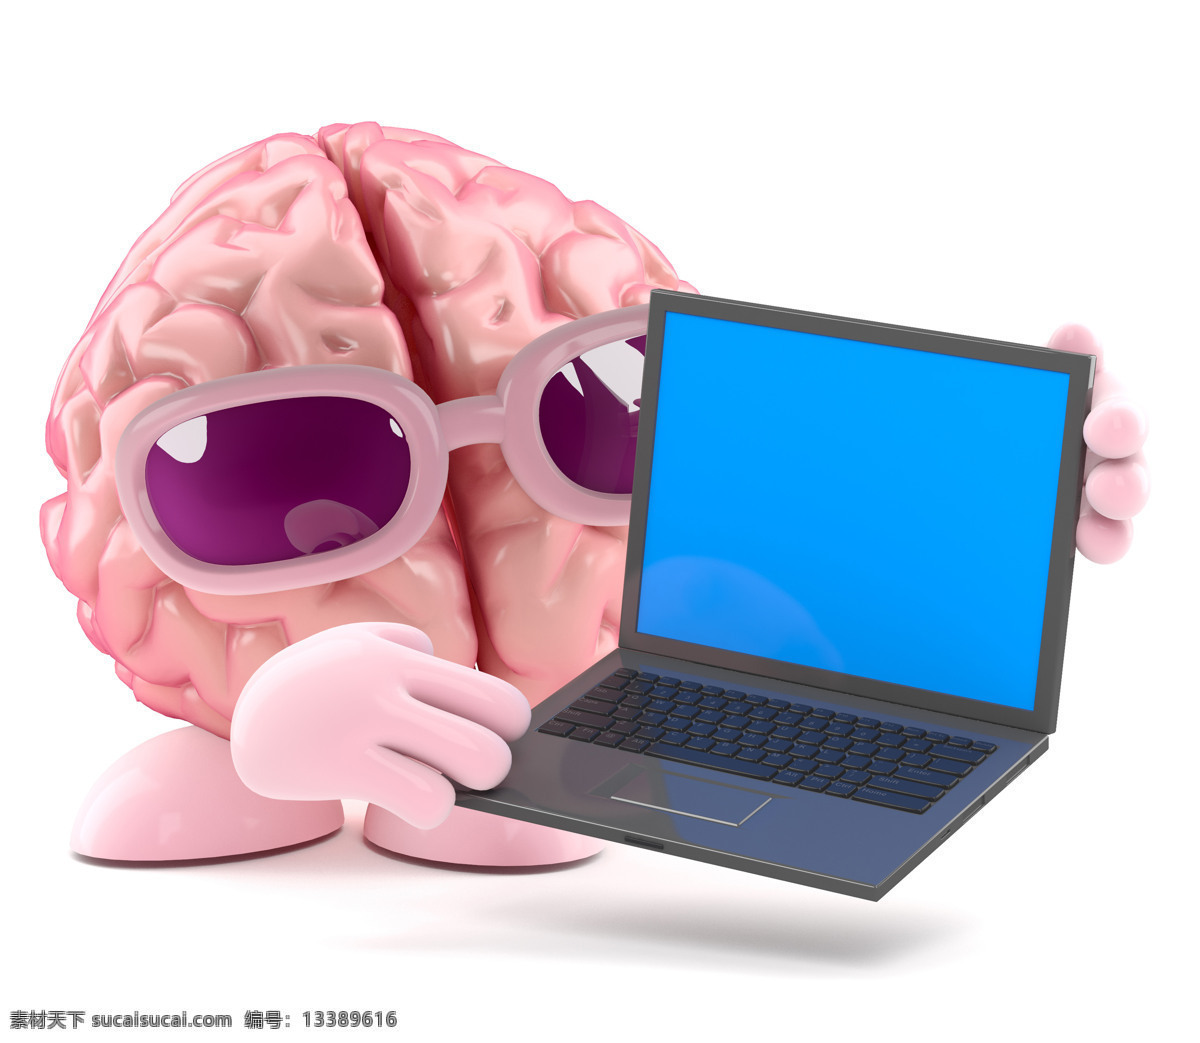 笔记本 大脑 动漫动画 儿童卡通 计算机 卡通动画 漫画 设计素材 模板下载 人类大脑 大脑漫画 大脑设计 卡通大脑 大脑人物 虚拟人物 脑细胞 脑容量 太阳镜 矢量图 现代科技